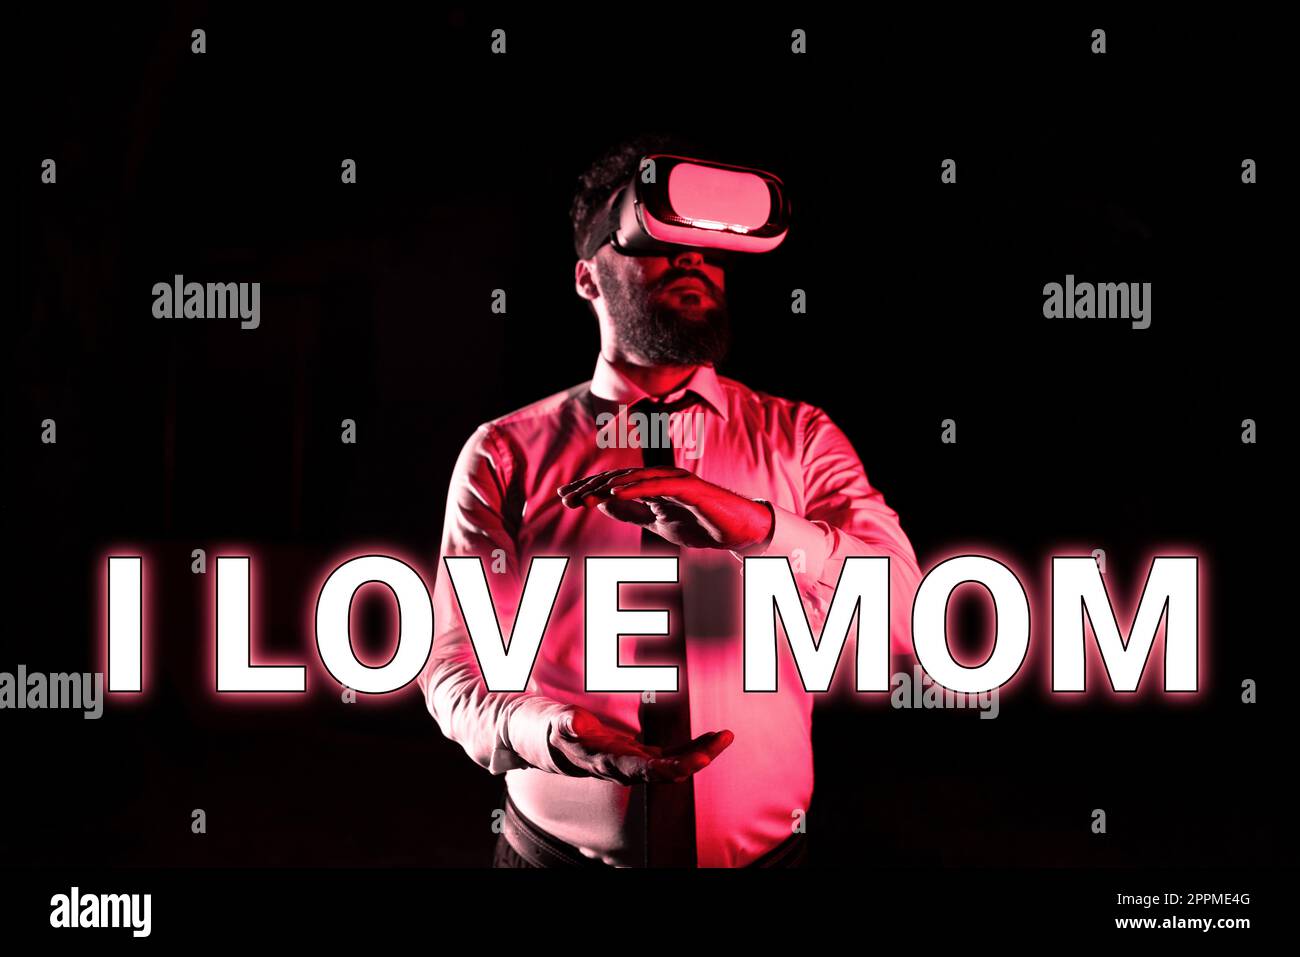 Affiche de texte montrant I Love Maman. Mot pour de bons sentiments au sujet de ma mère affection aimant le bonheur Banque D'Images